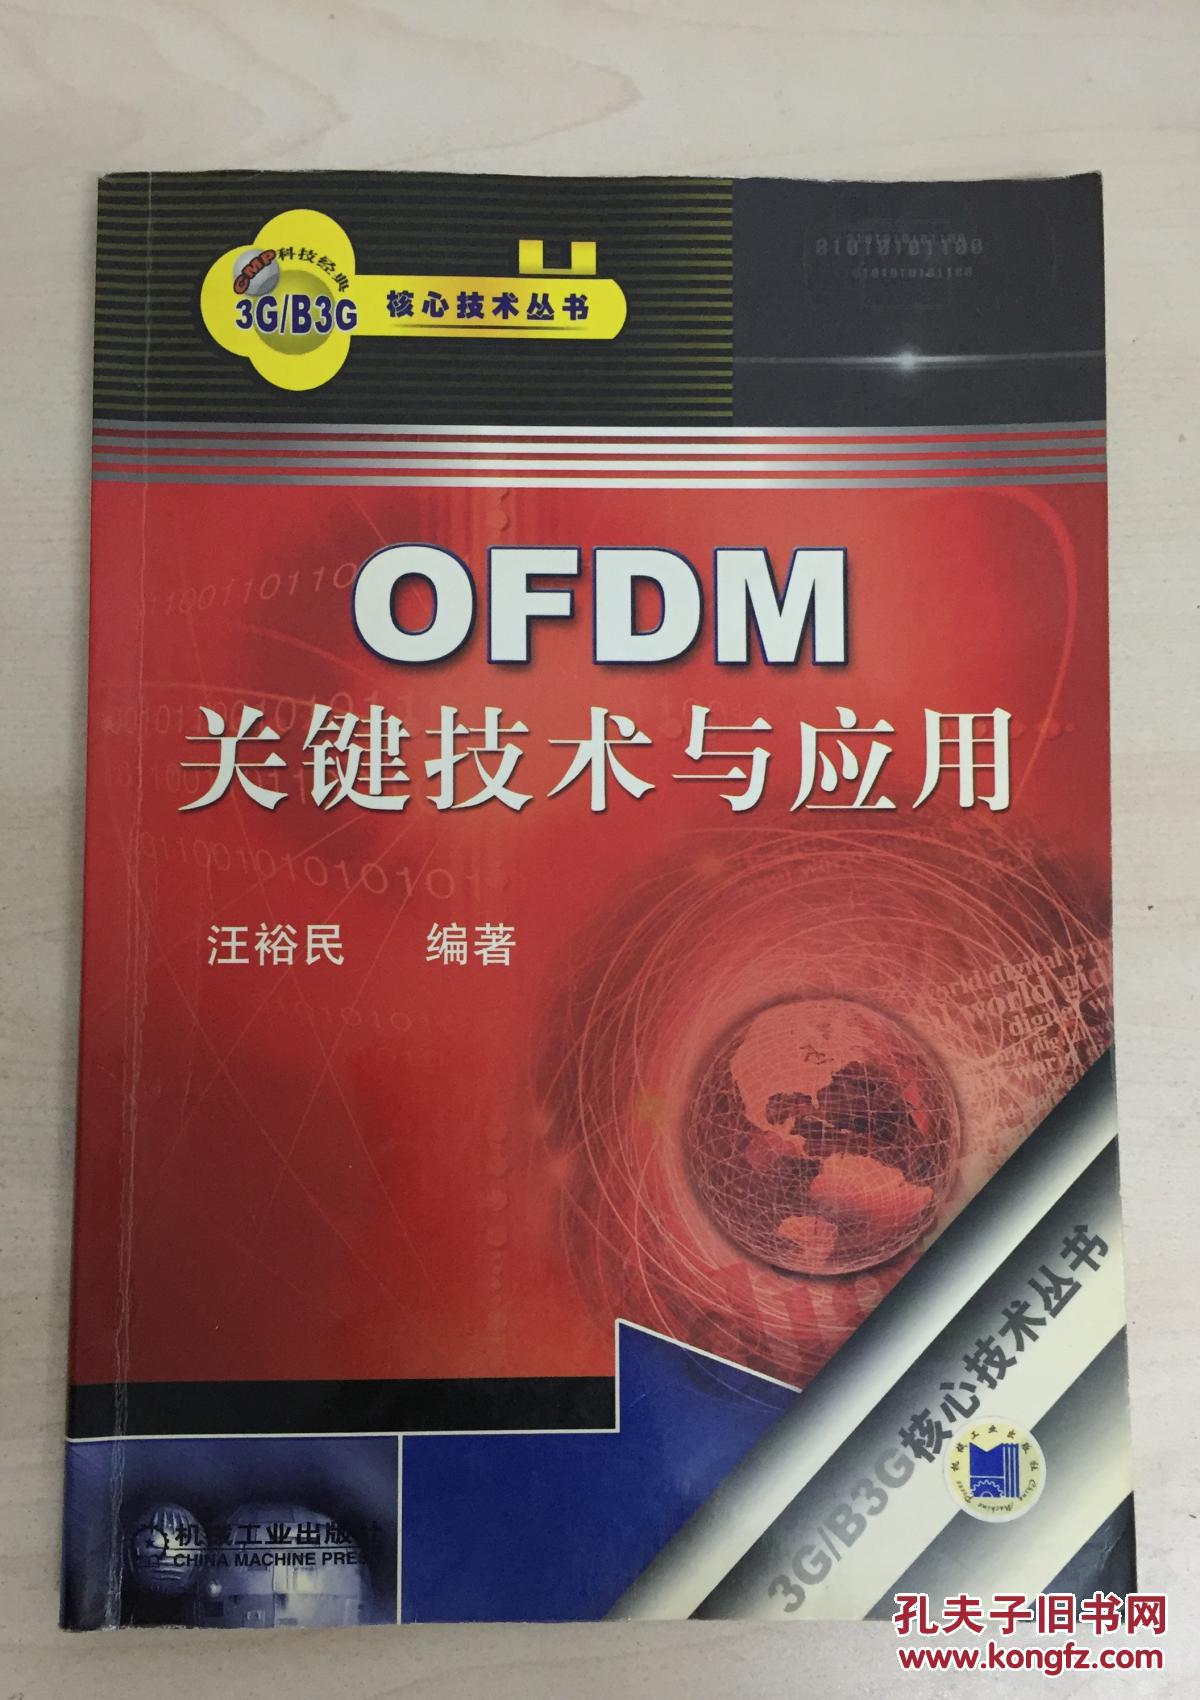 OFDM关键技术与应用 9787111201083